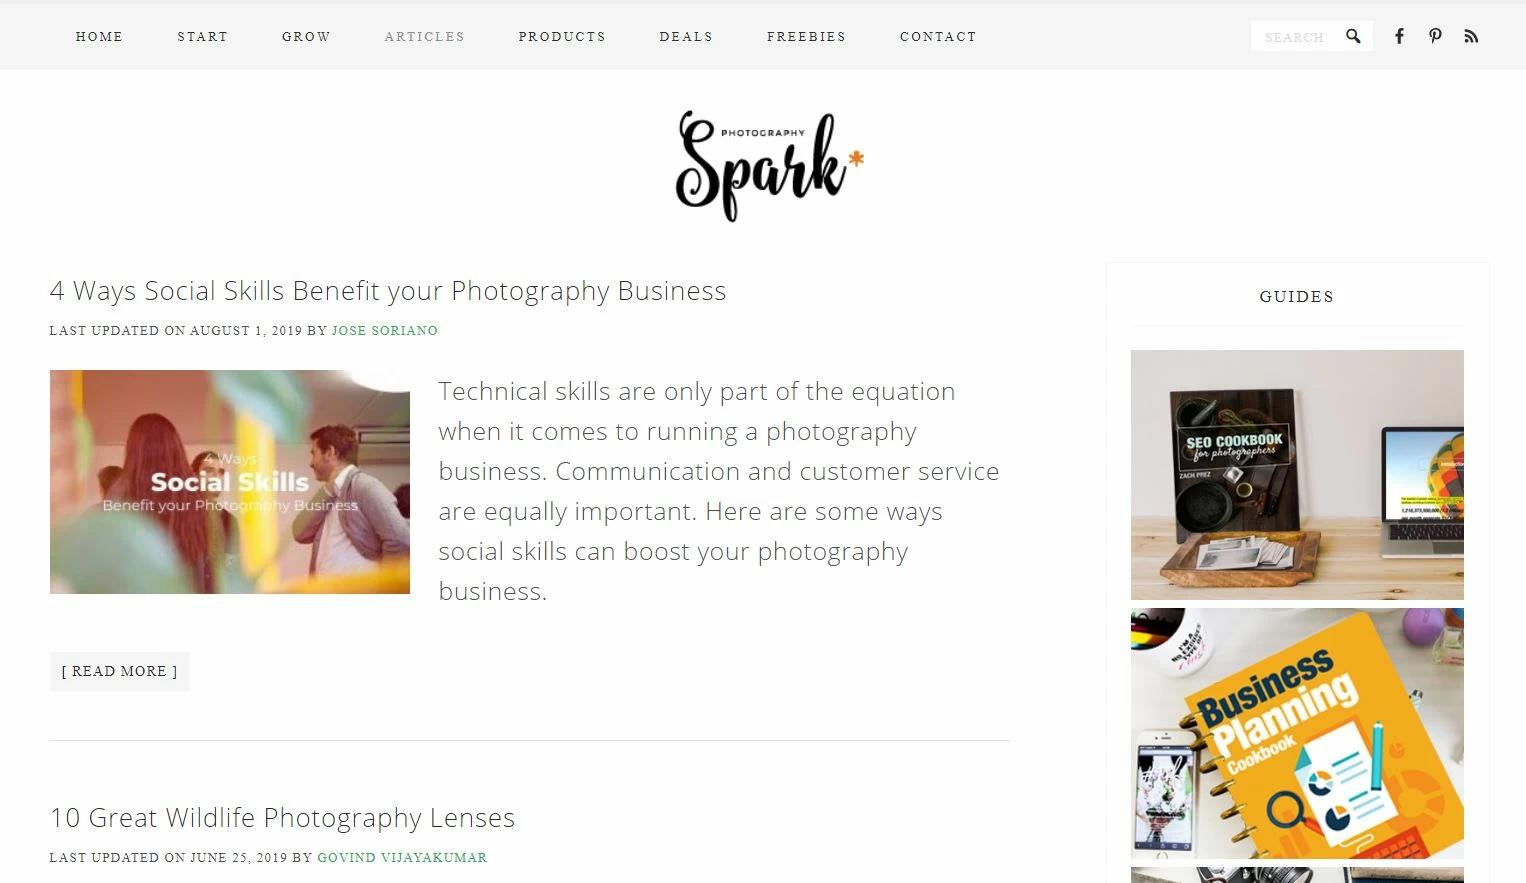 Photography Spark